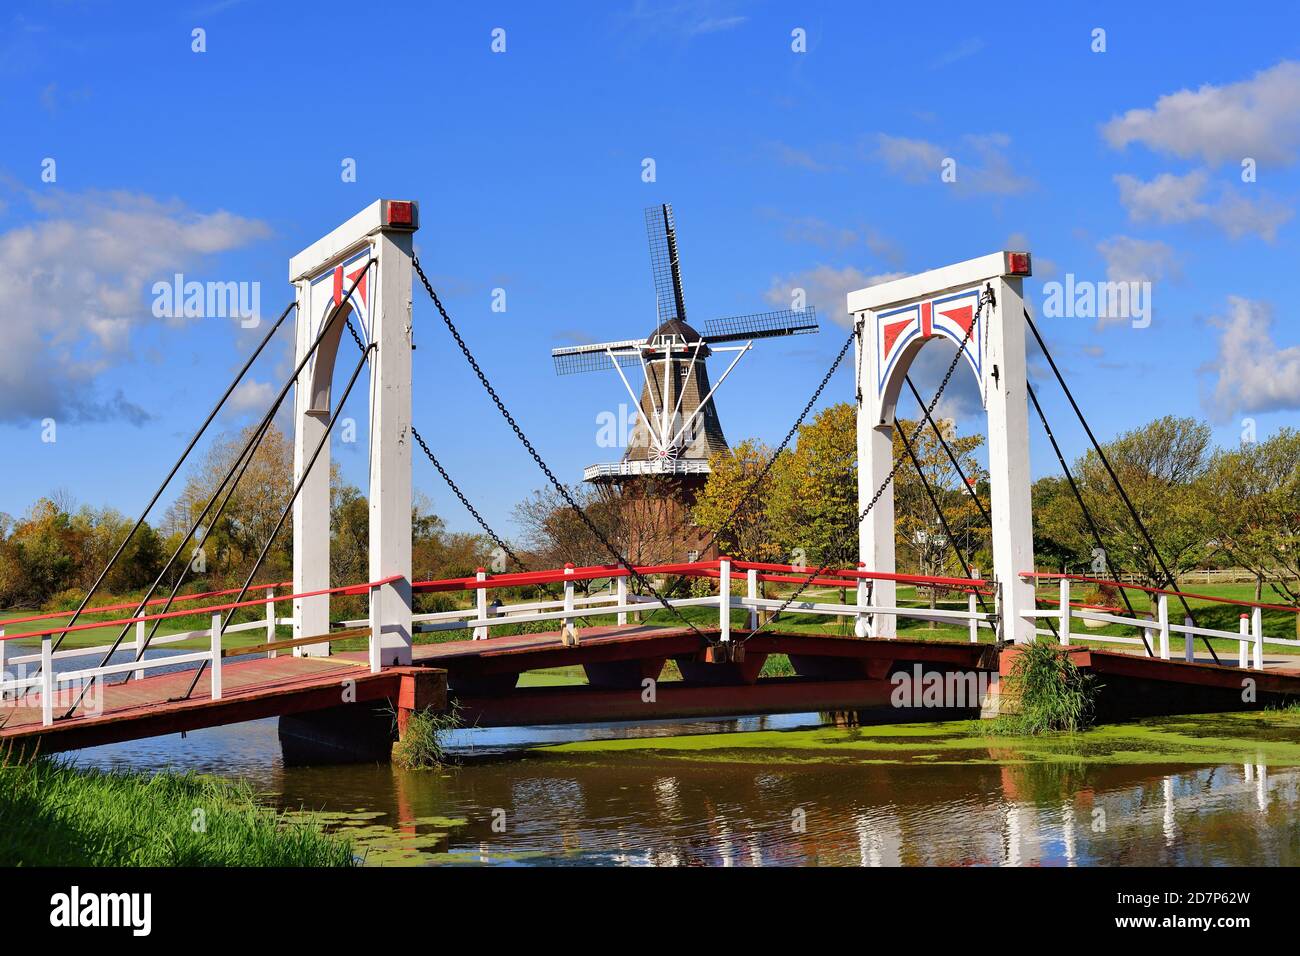 Pays-Bas, Michigan, États-Unis. Windmill Island Gardens, en Hollande, au Michigan, est dédié au patrimoine et à la culture néerlandais. Banque D'Images